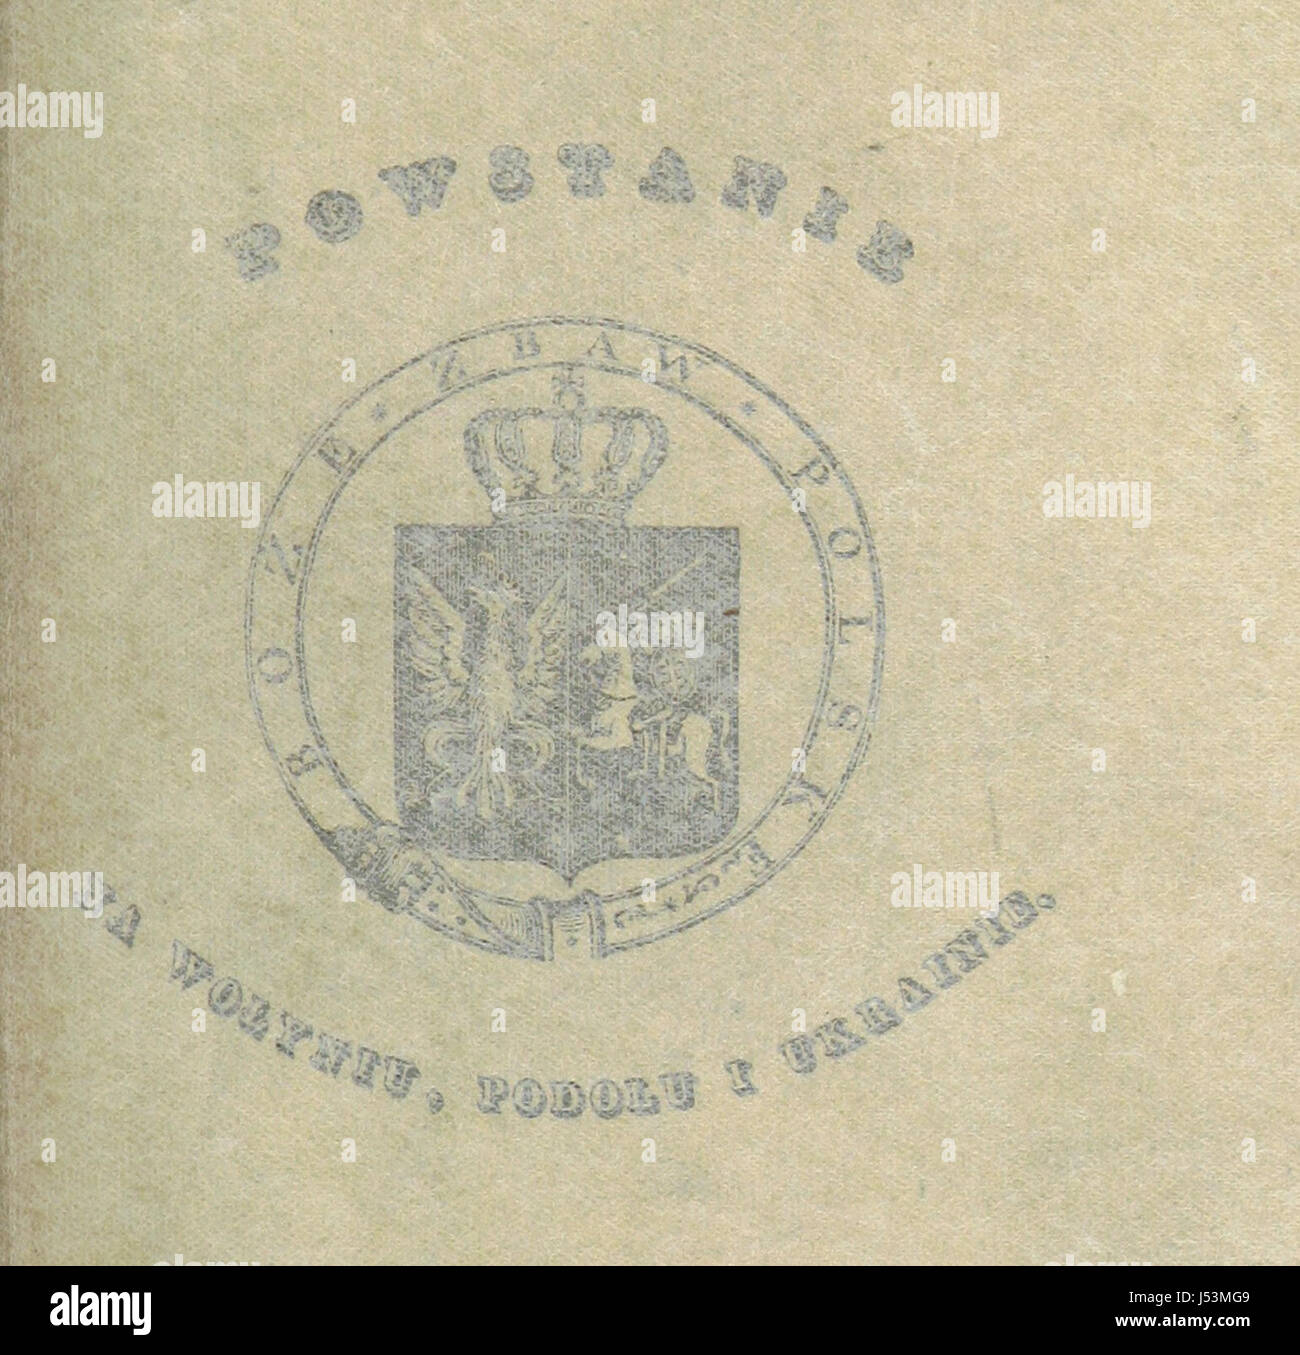 Powstanie na Wołyniu, Podolu i Ukrainie w roku 1831 Stock Photo